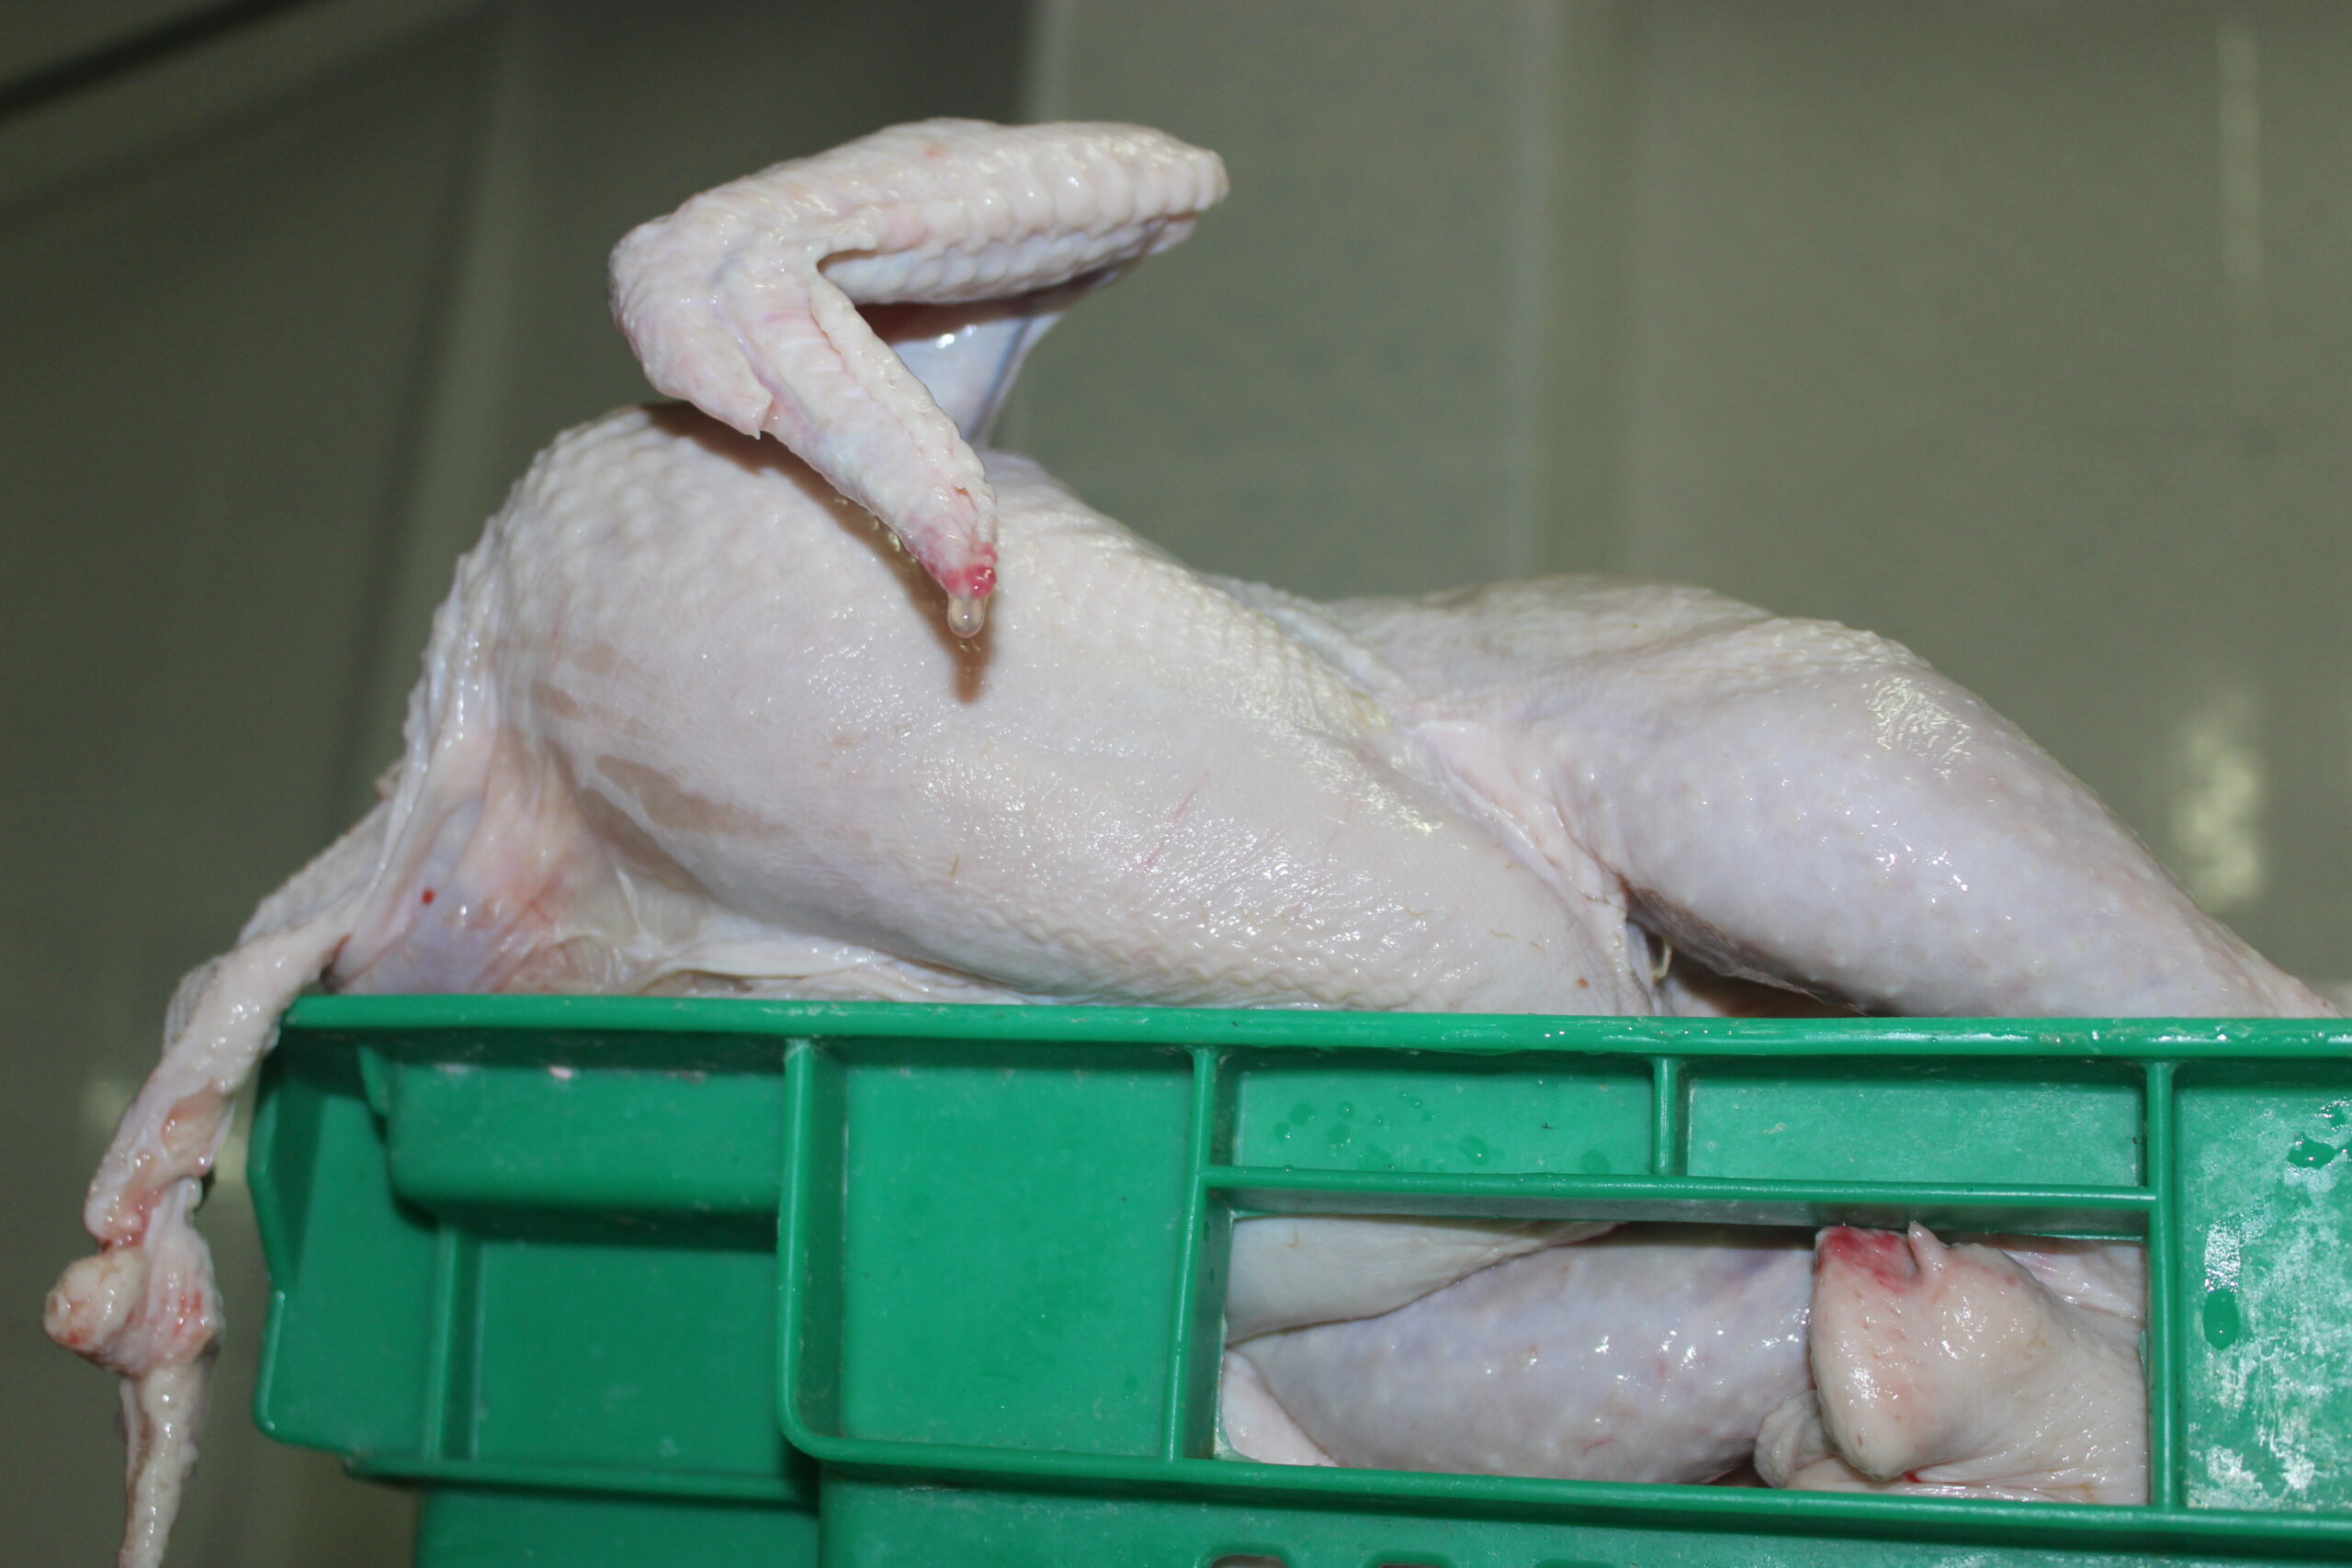 «АСА АГРО»: жамбылцев завалят куриным мясом